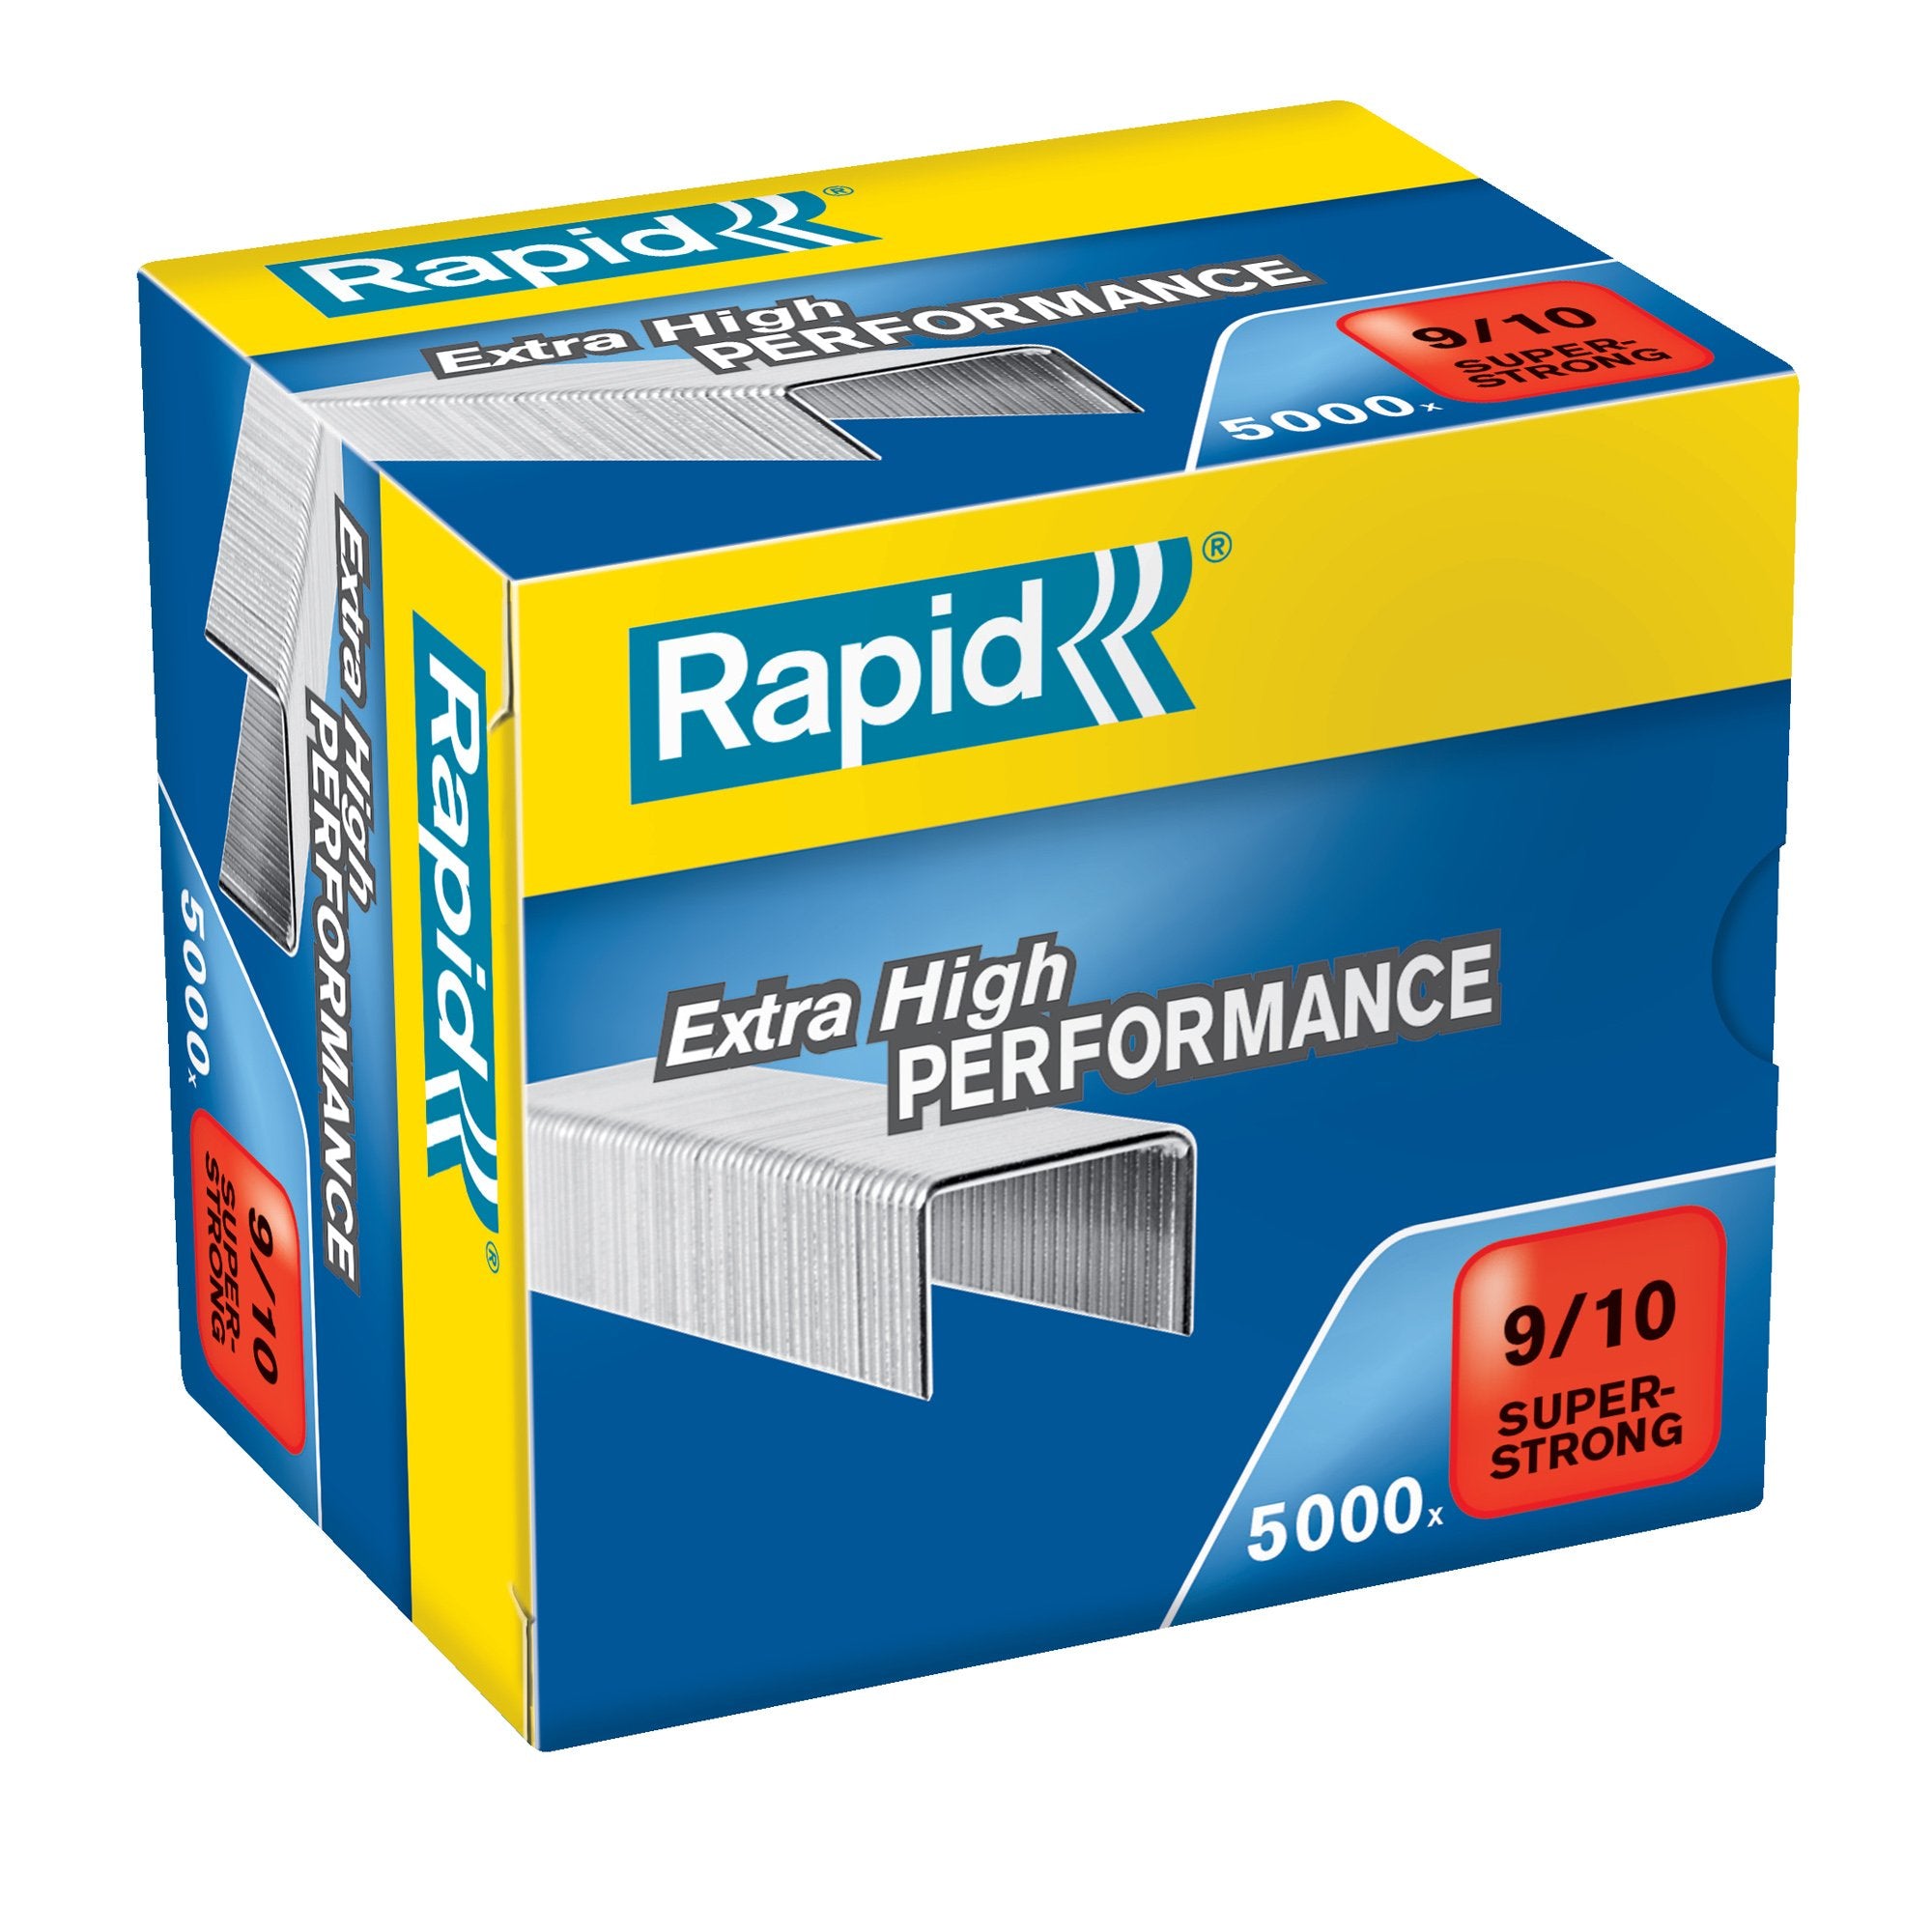 rapid-scatola-5000-punti-super-strong-9-10-alti-spessori